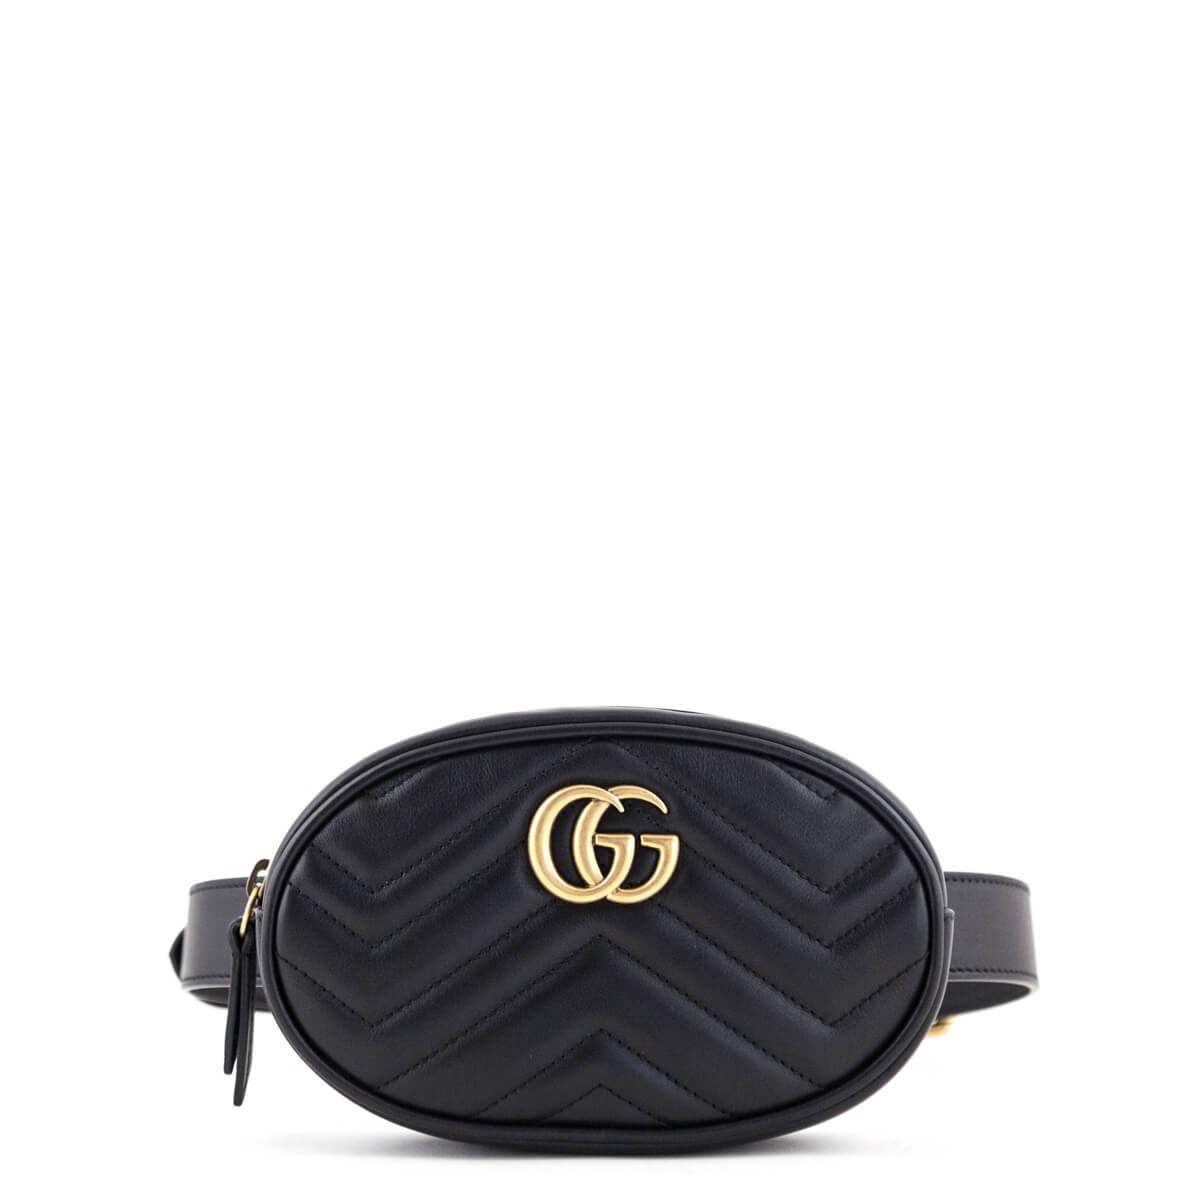 Belt bag của Gucci có tính ứng dụng rất cao đi kèm nhiều trang phục